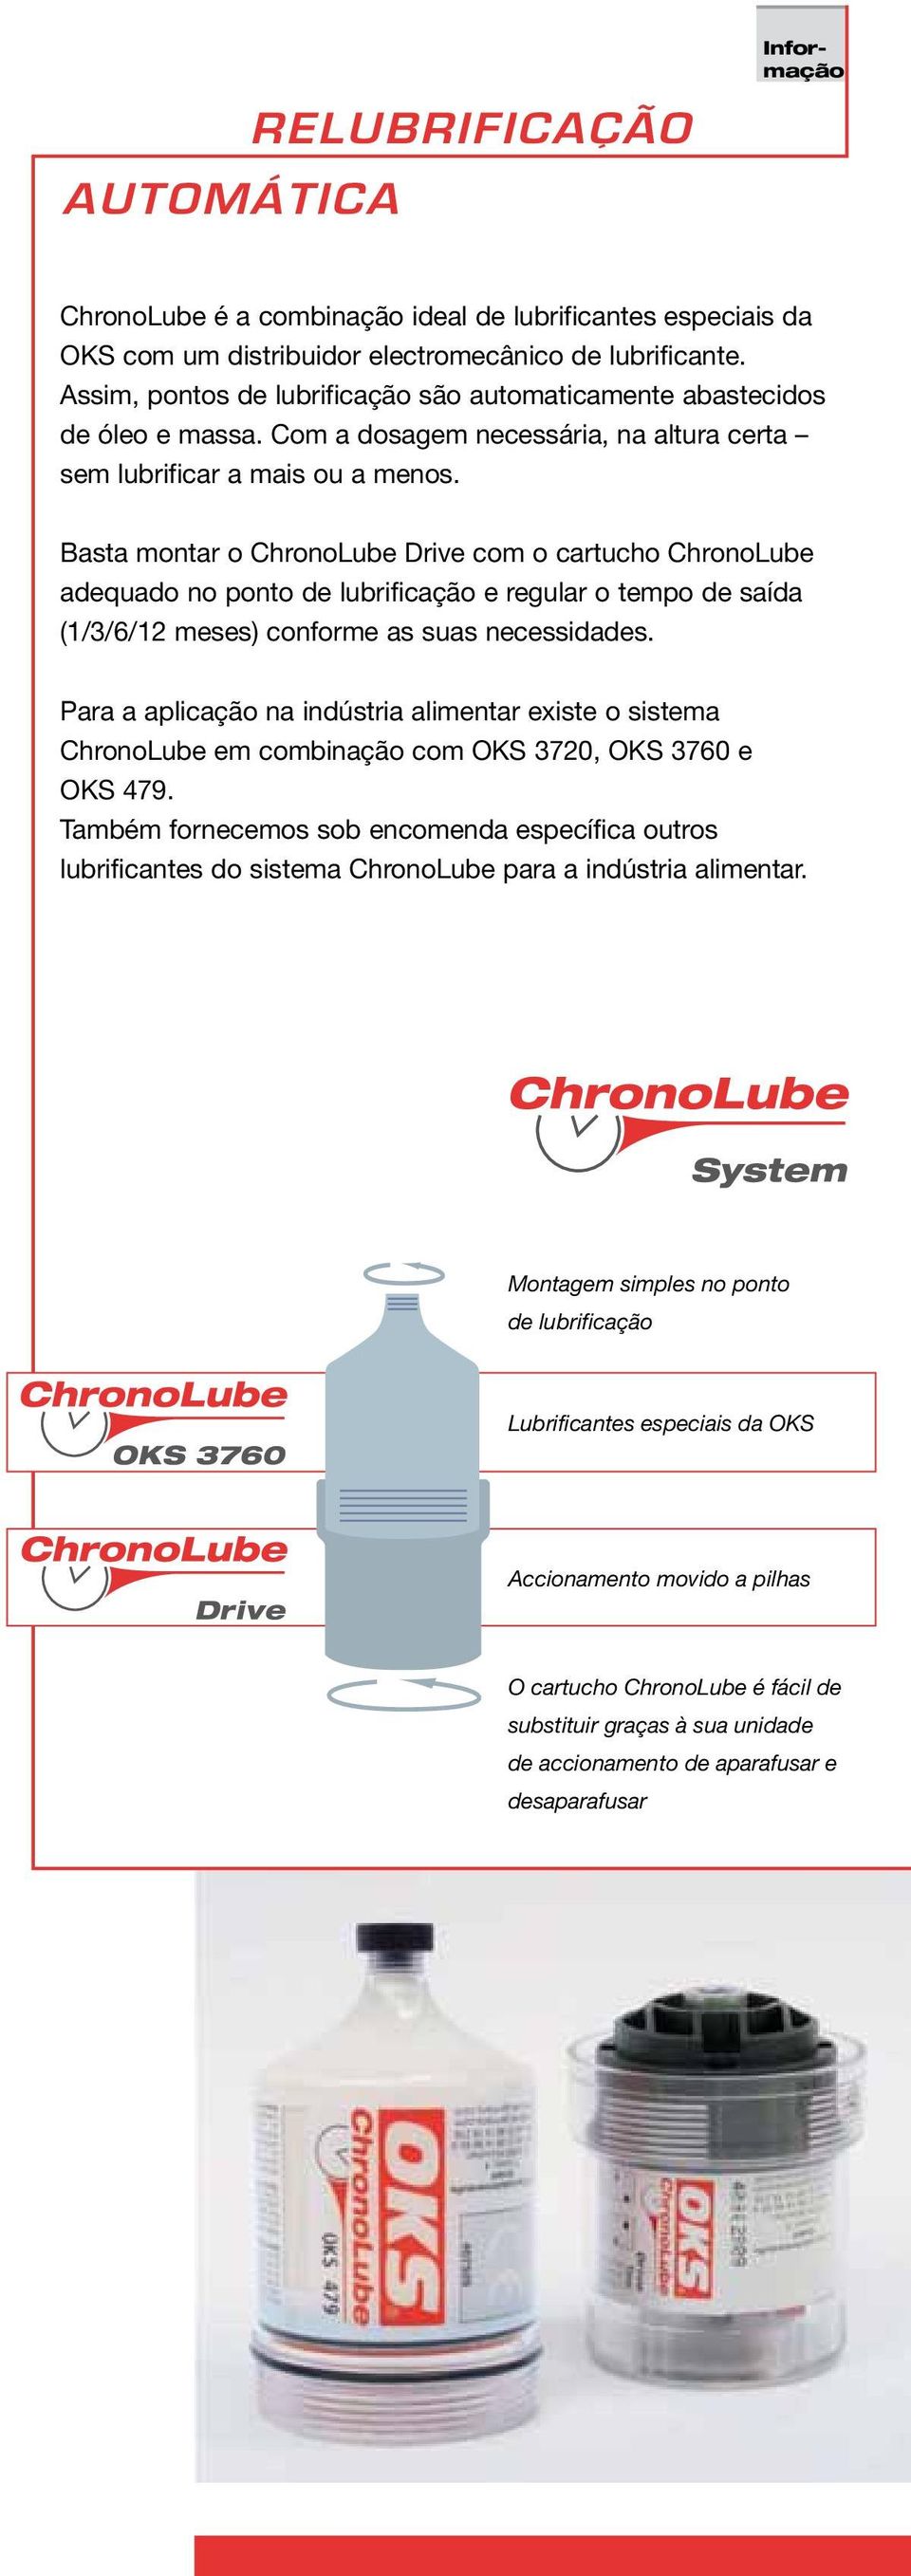 Basta montar o ChronoLube Drive com o cartucho ChronoLube adequado no ponto de lubrificação e regular o tempo de saída (1/3/6/12 meses) conforme as suas necessidades.